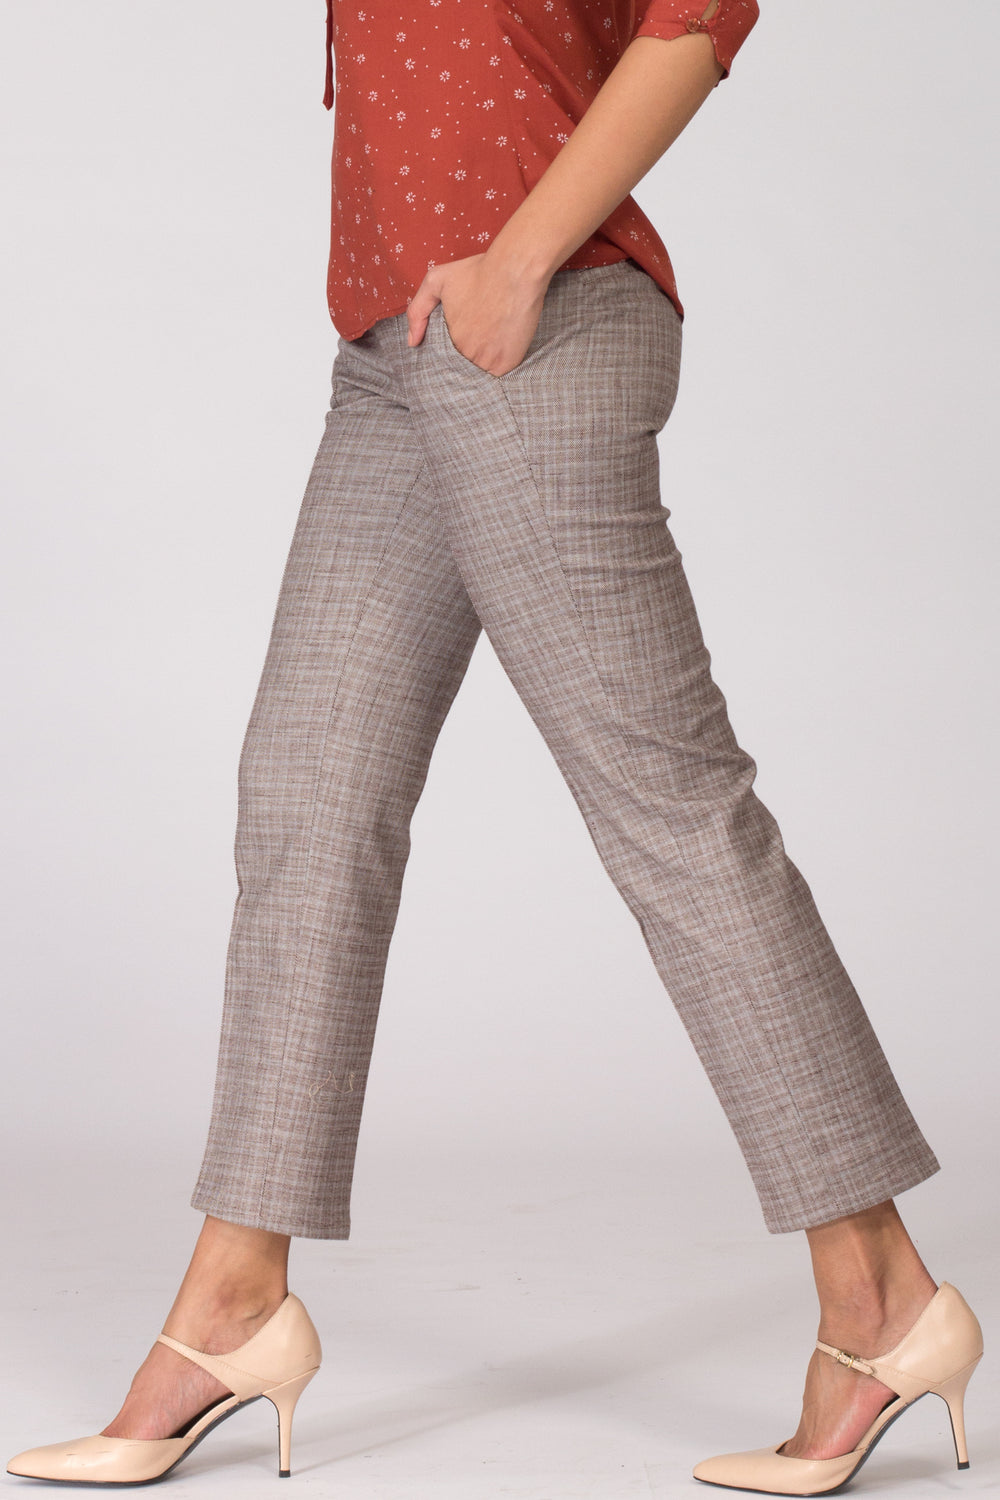 Buy Women Khaki Solid Formal Regular Fit Pants Online  543422  Van Heusen